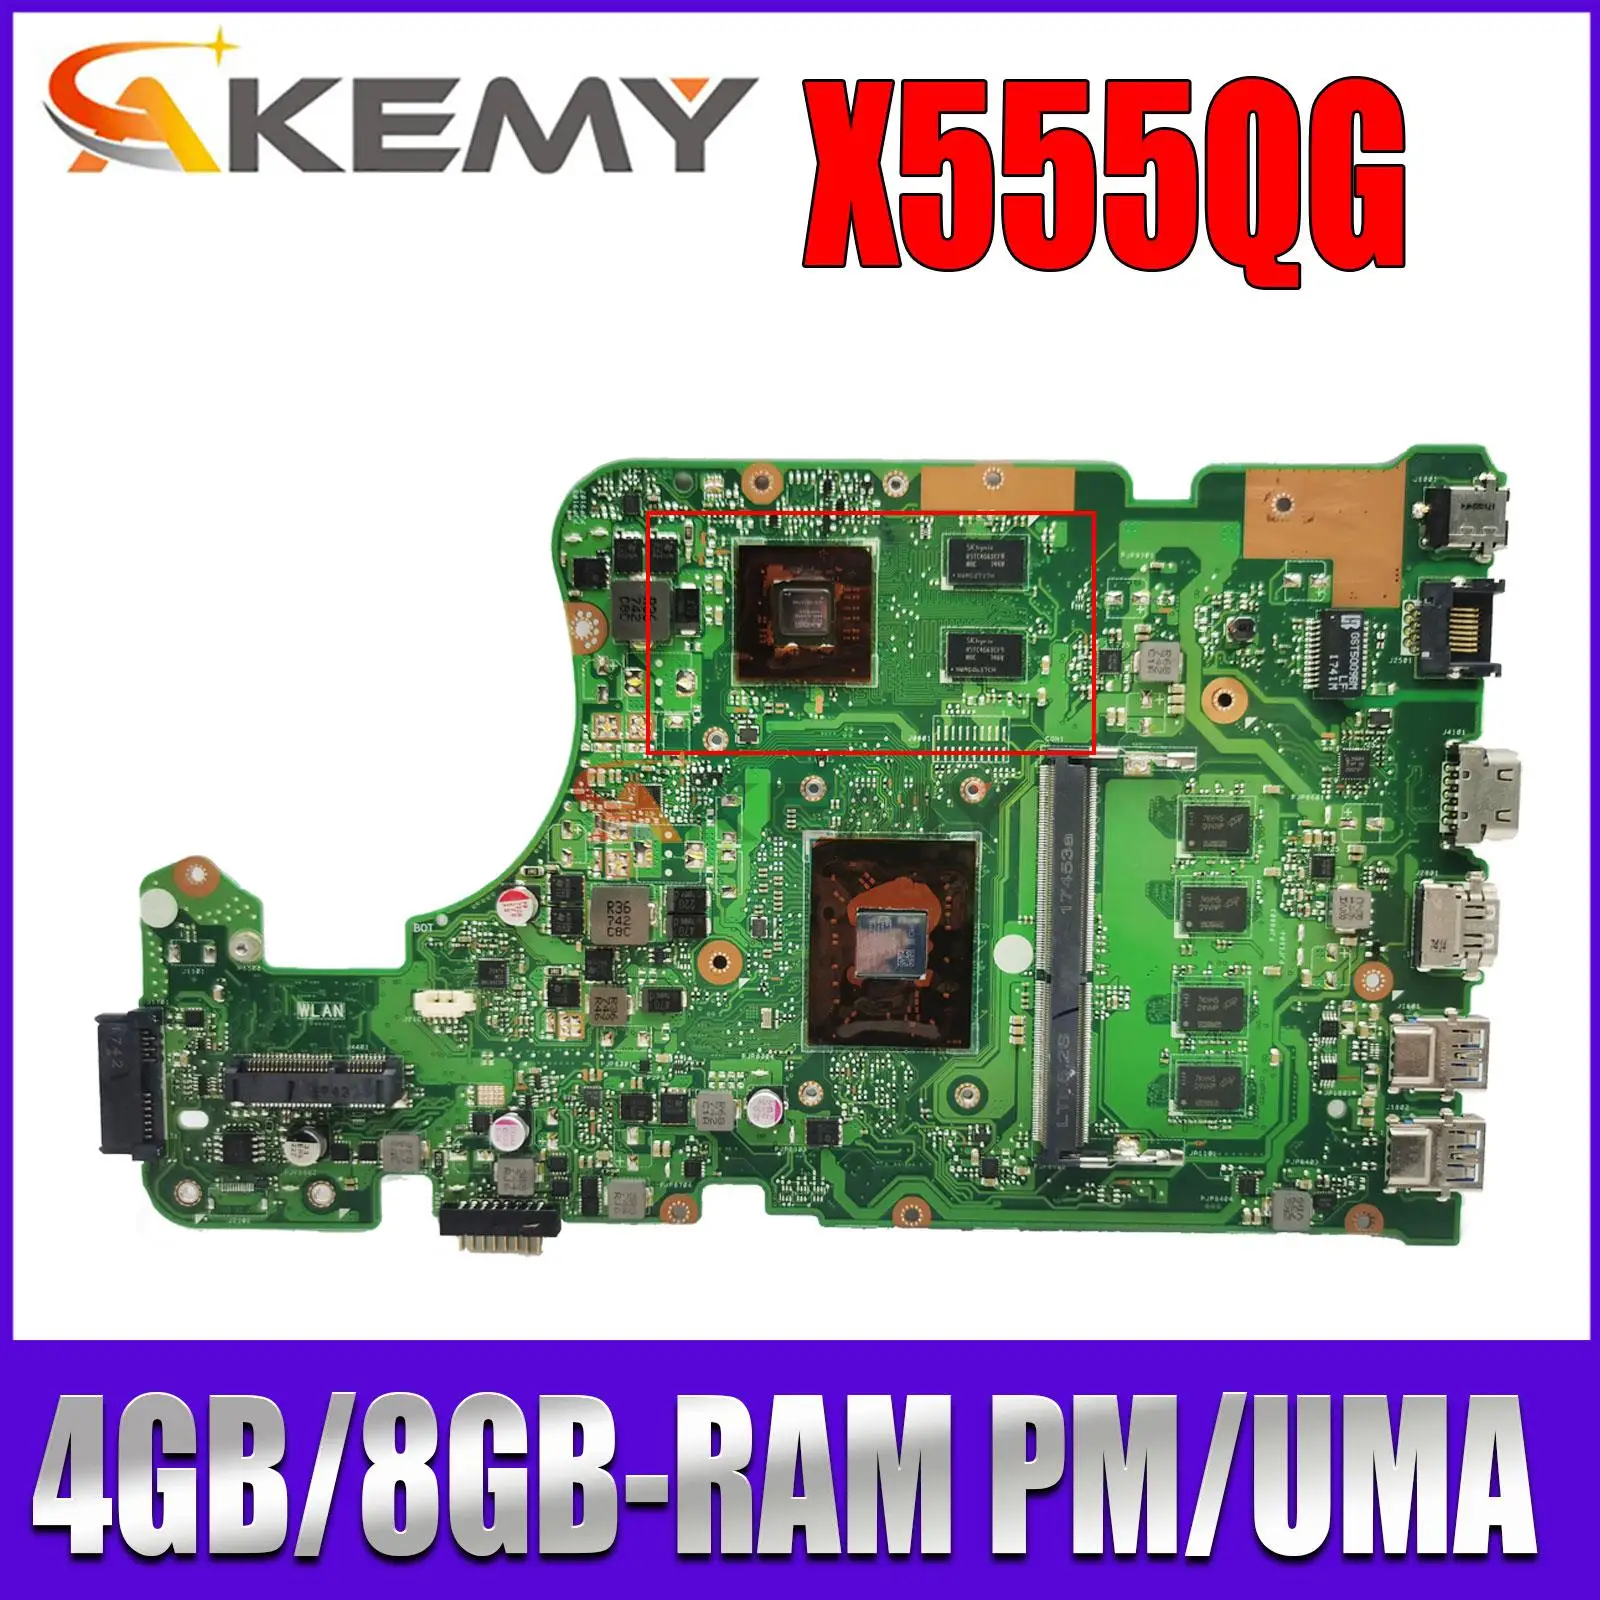 

A555B Mainboard X555BP X555B A555Q X555QG X555Q X555QA X555BA Laptop Motherboard A6 A9 A10 A12 CPU 4GB/8GB-RAM PM/UMA